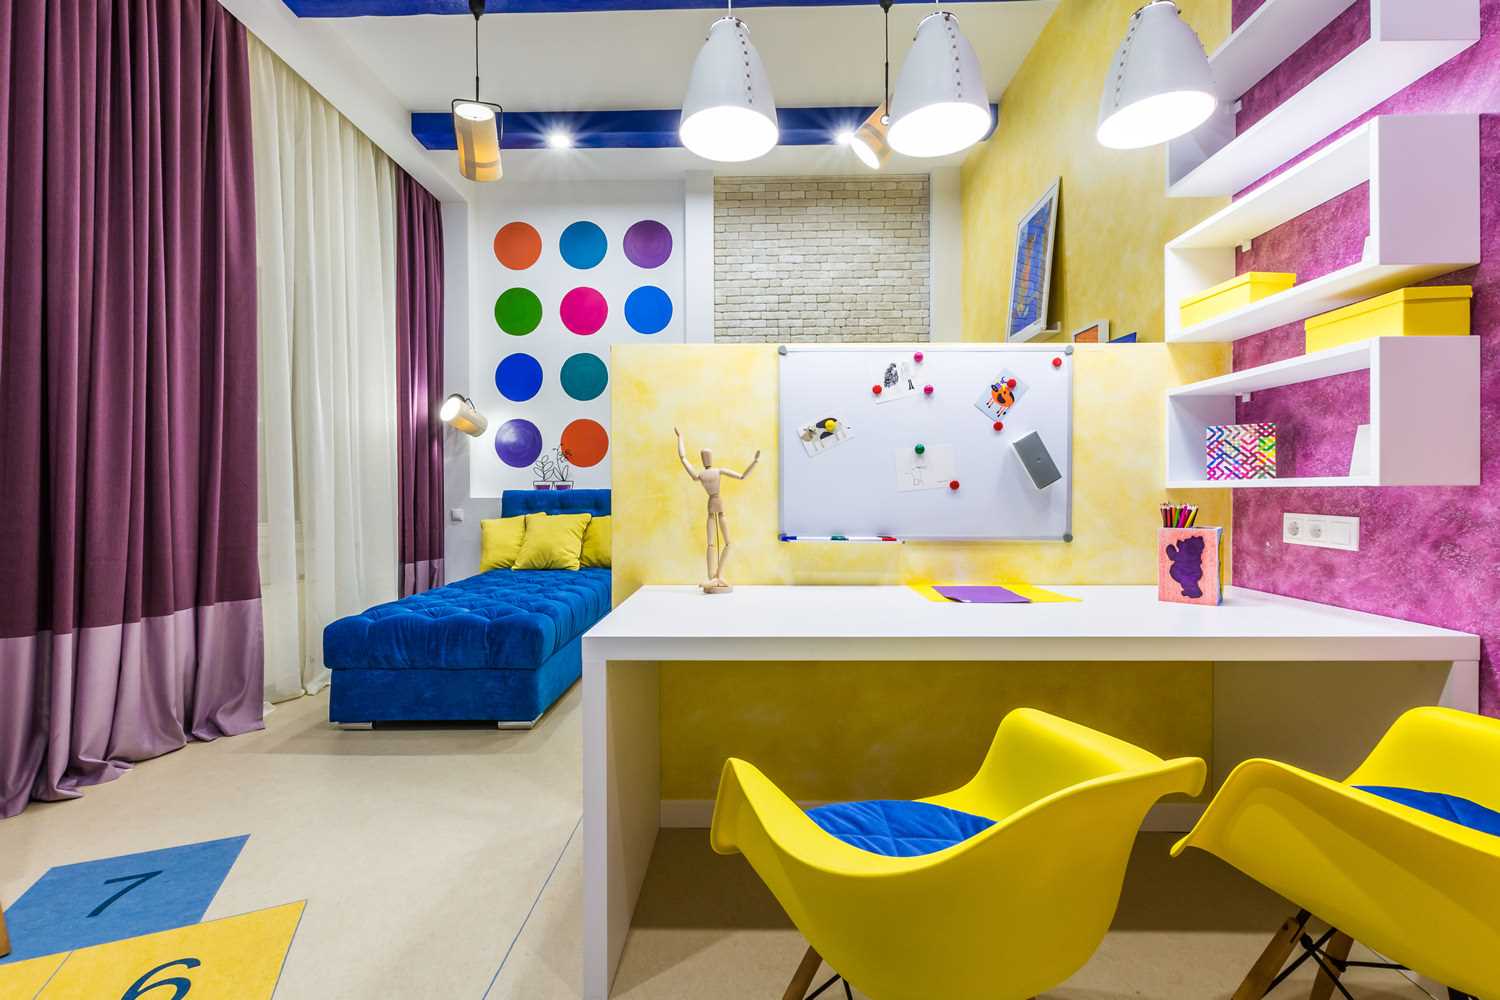 Un esempio di un interno luminoso per una camera per bambini per due ragazze